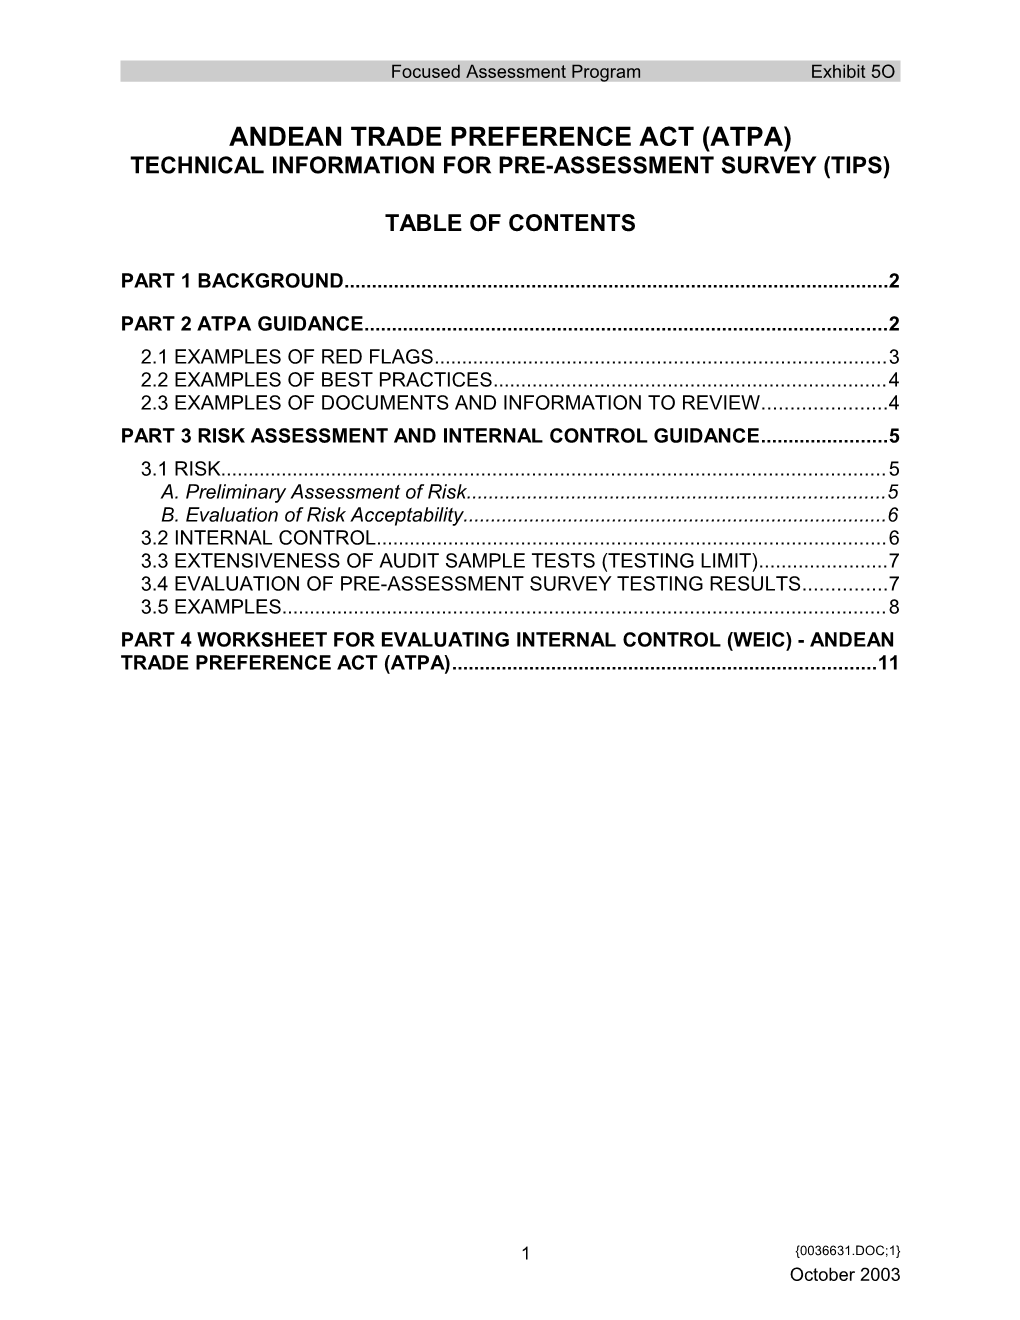 FAP Doc - Exhibit 5O - Andean Trade Preference Act (APTA) - (0036631;1)